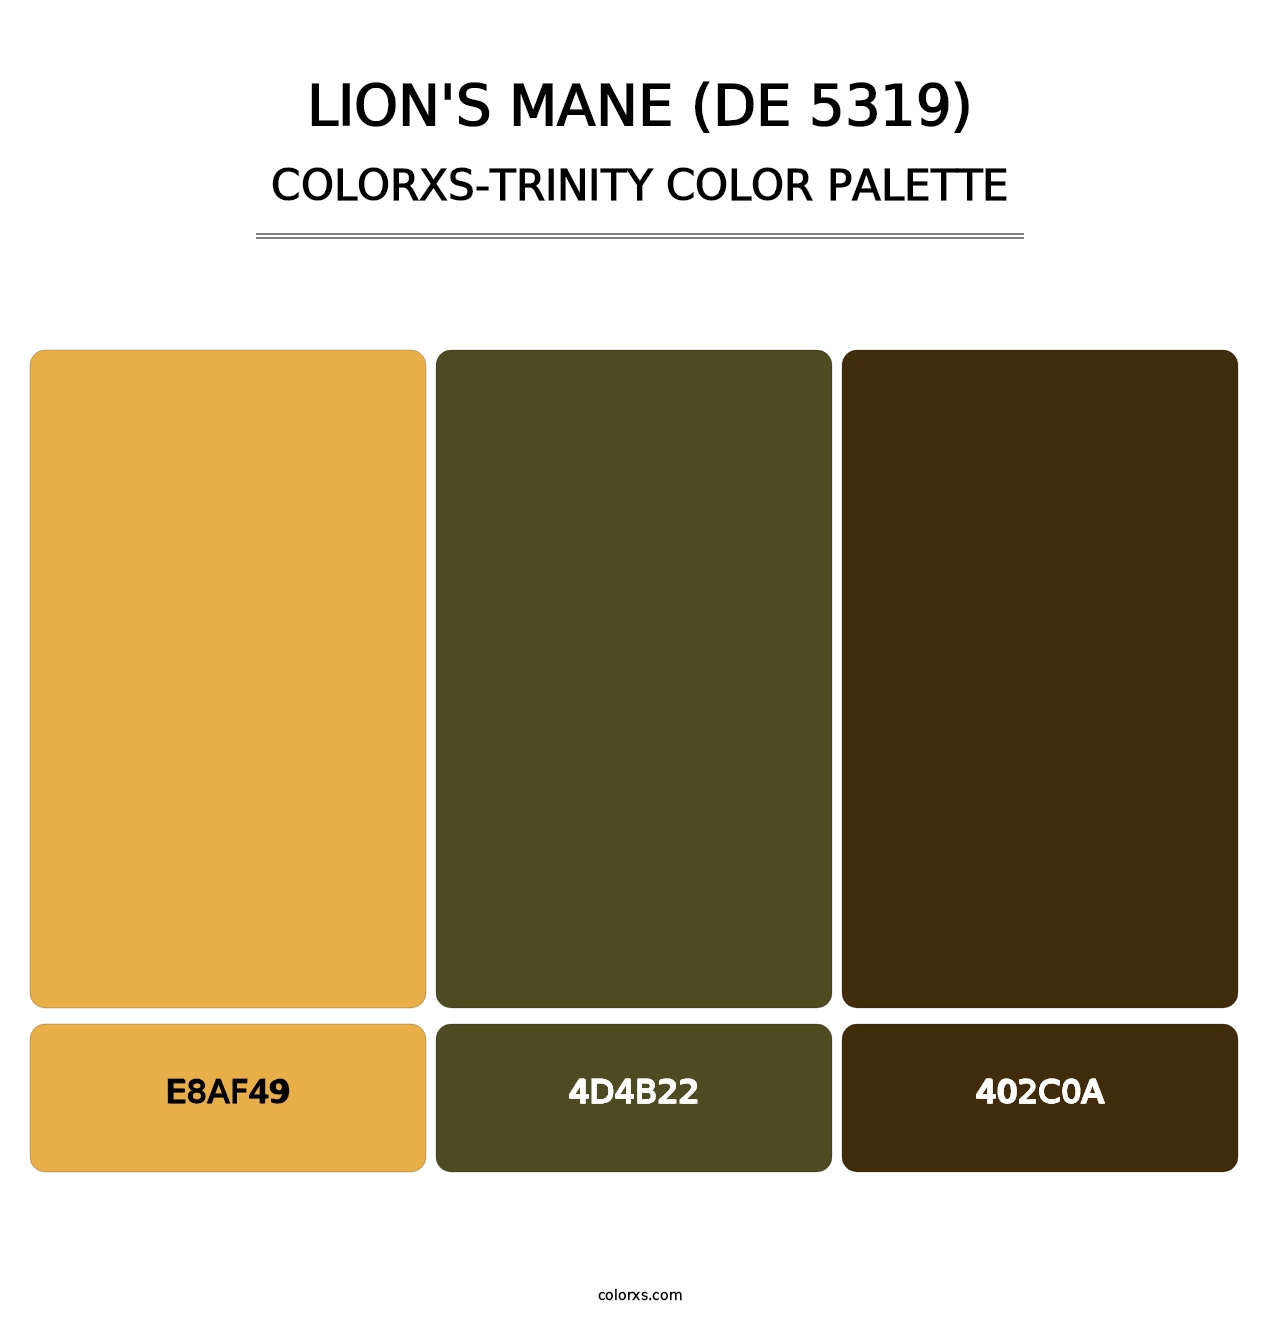 Lion's Mane (DE 5319) - Colorxs Trinity Palette